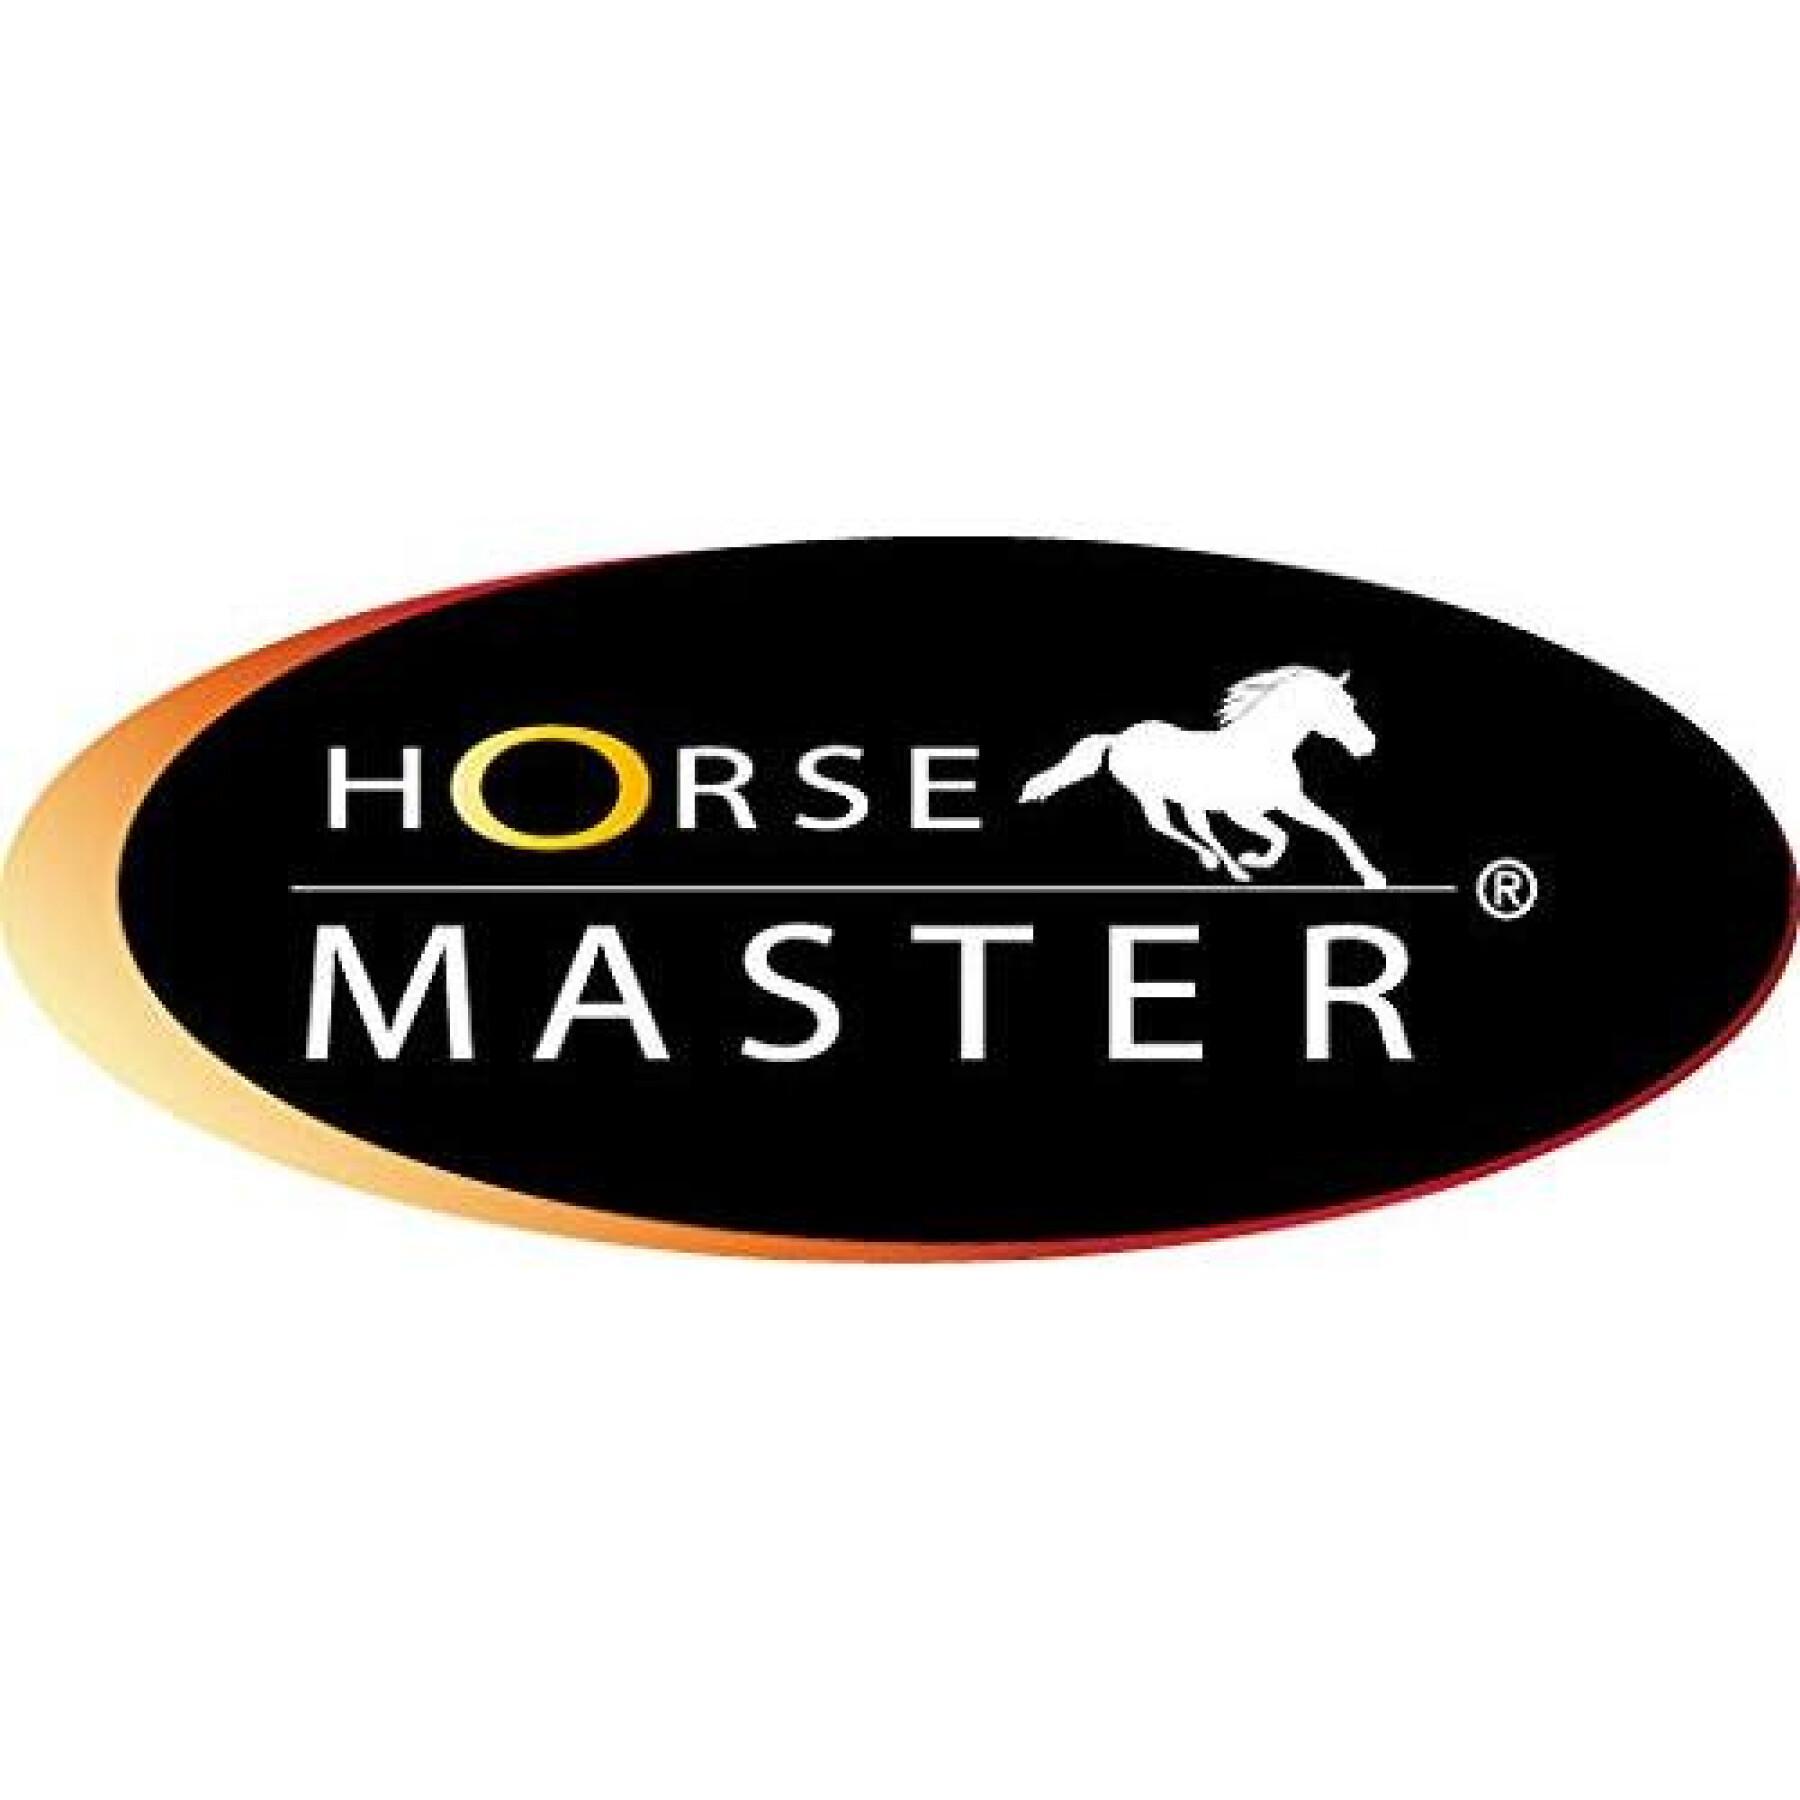 Lot de 20 cotons pour cheval mixte Horse Master 45x35/45x50 cm